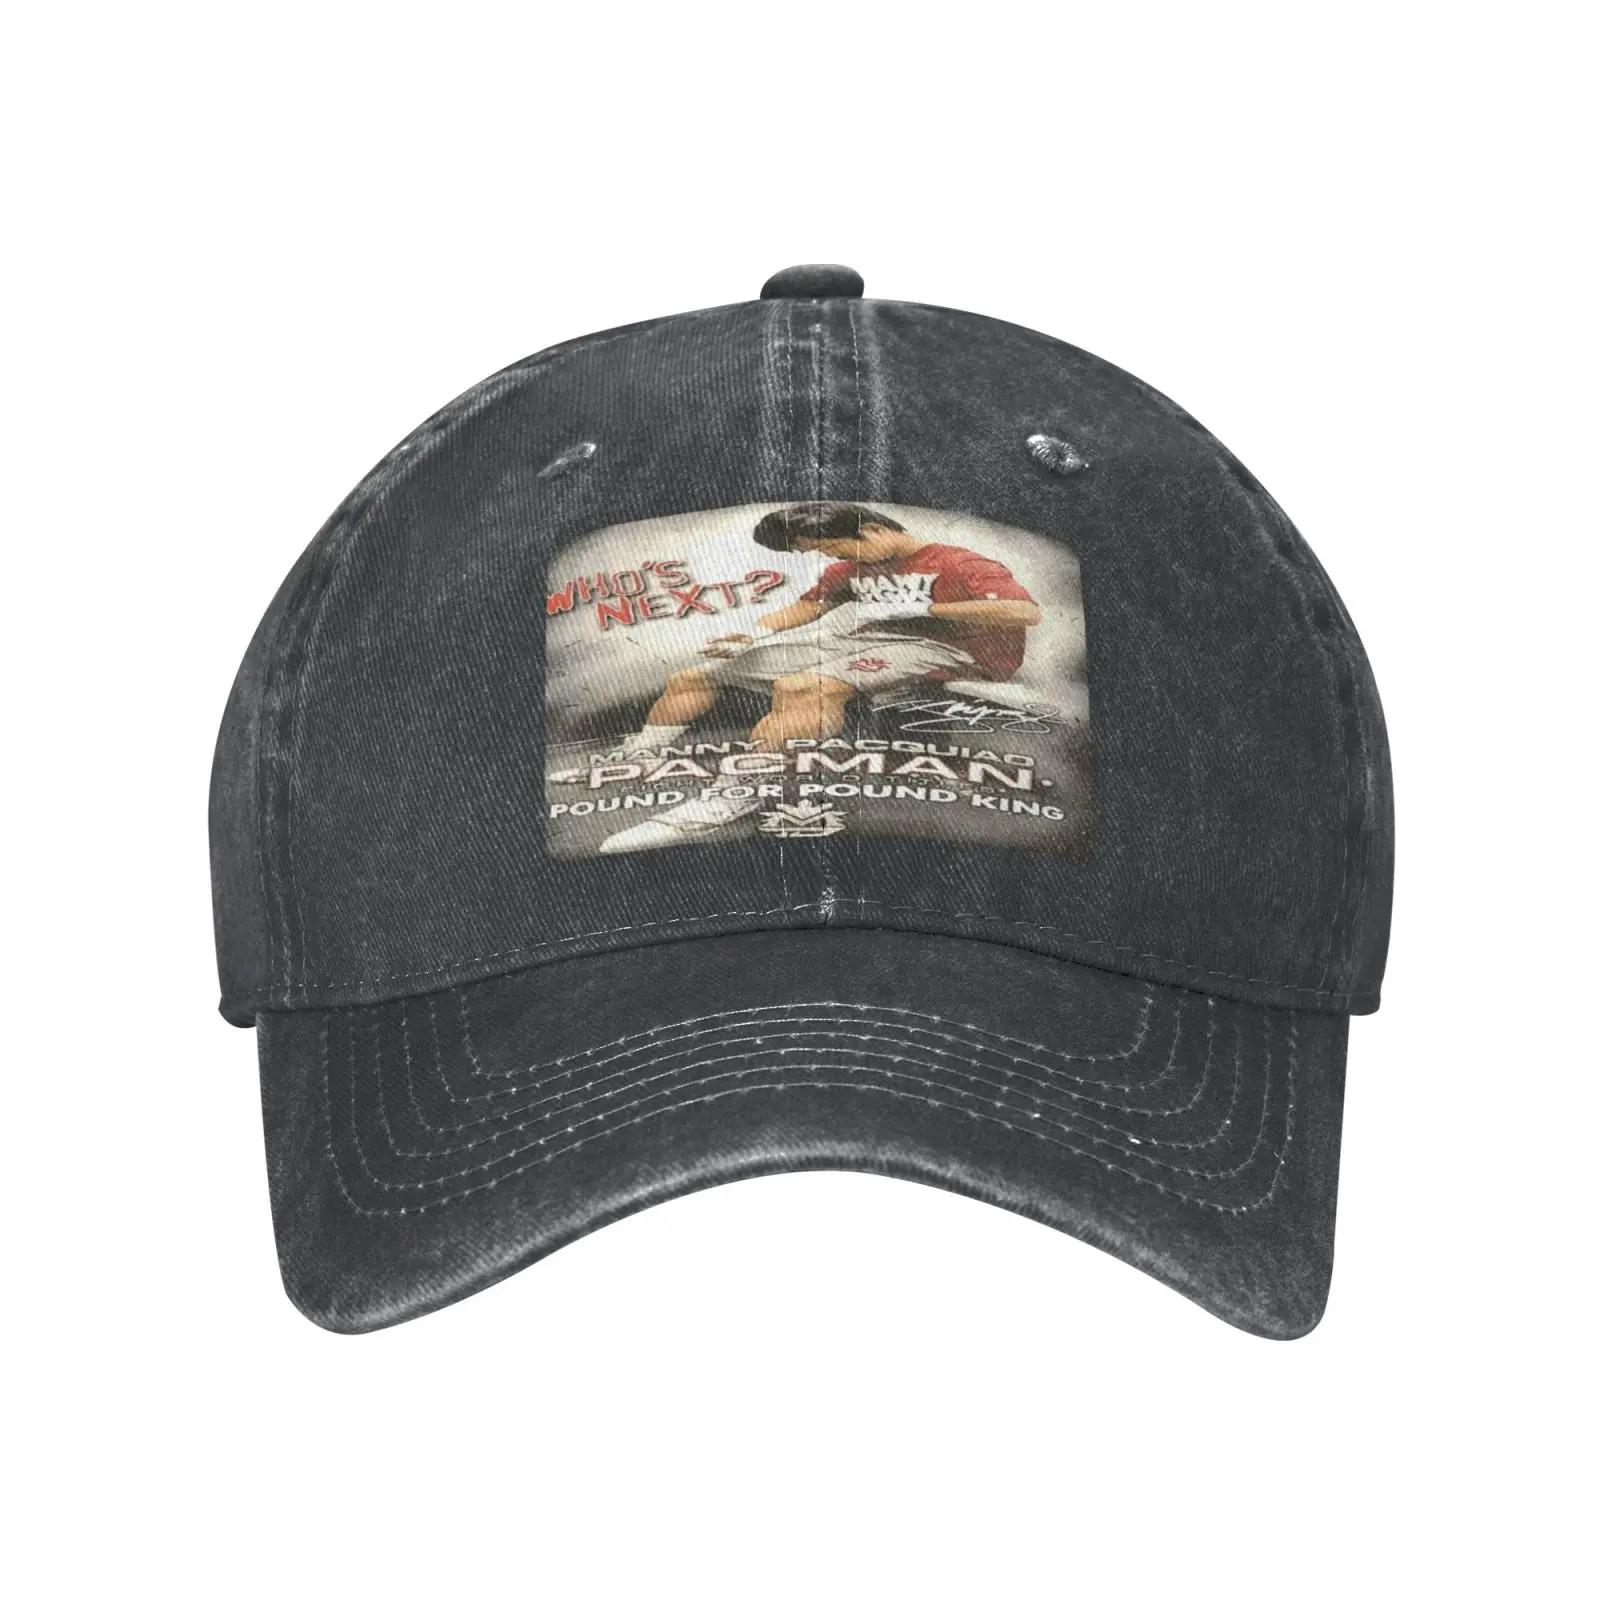 

Manny Pacquiao Whos подходит как бейсболка для мужчин Мужская Панама головной убор Мужская шляпа мужская шляпа Приключения в Бразилию